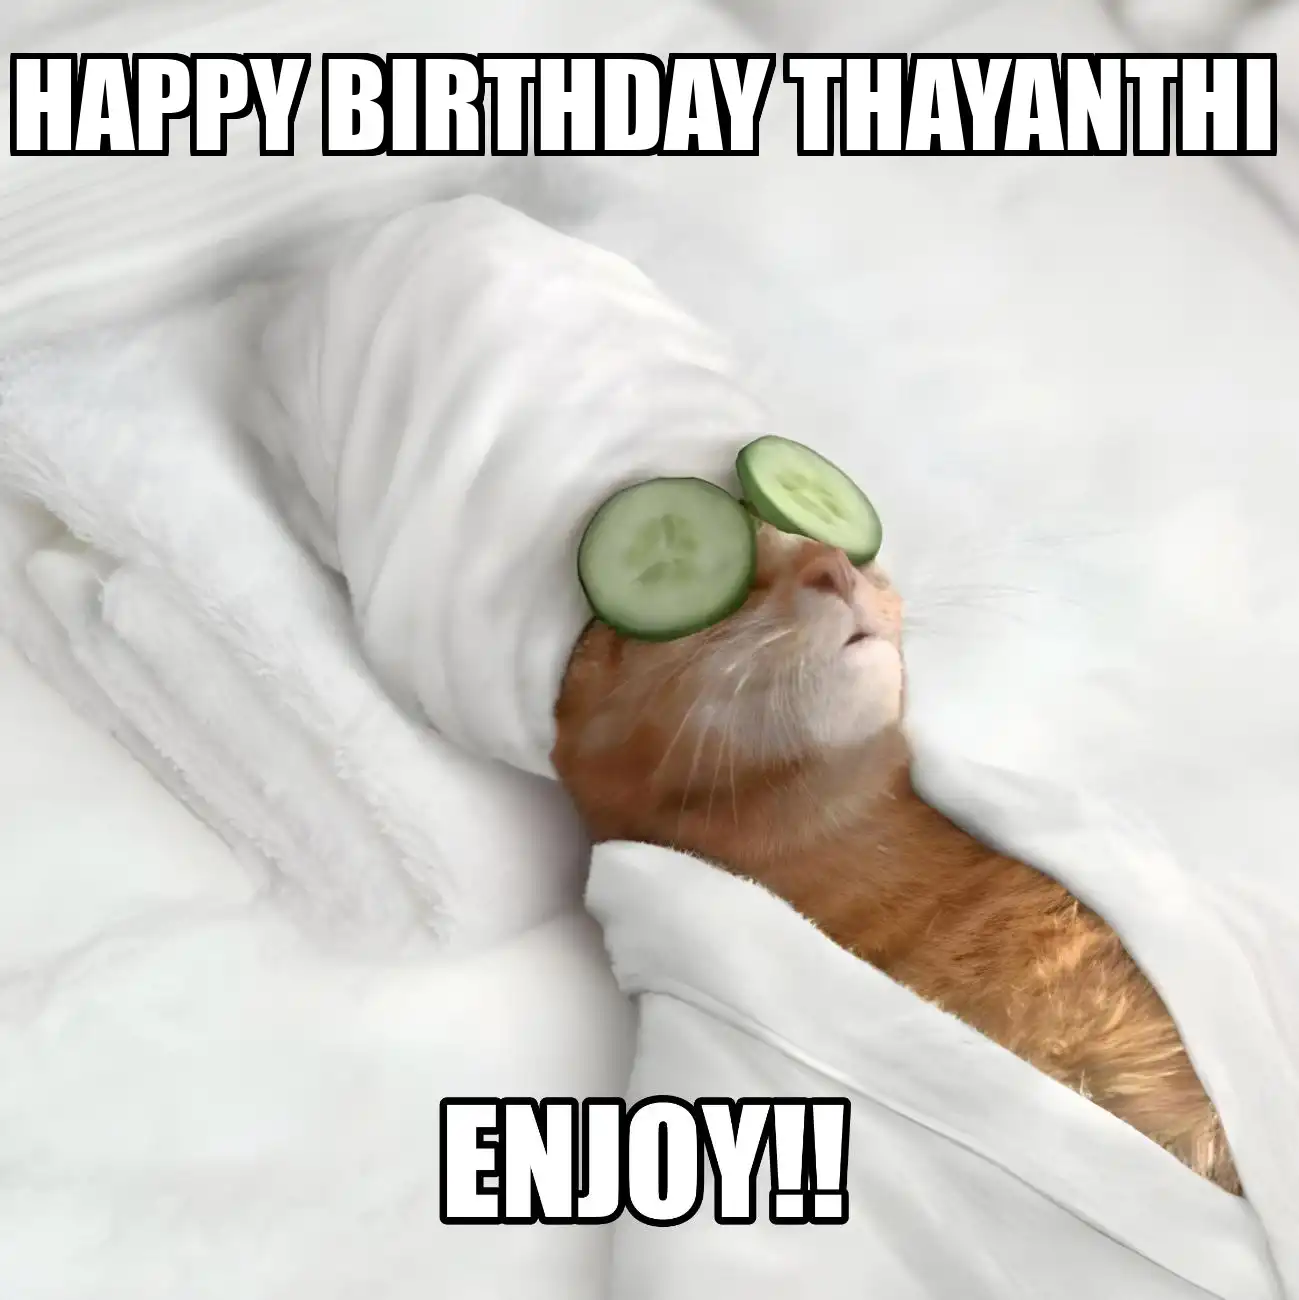 Happy Birthday Thayanthi Enjoy Cat Meme